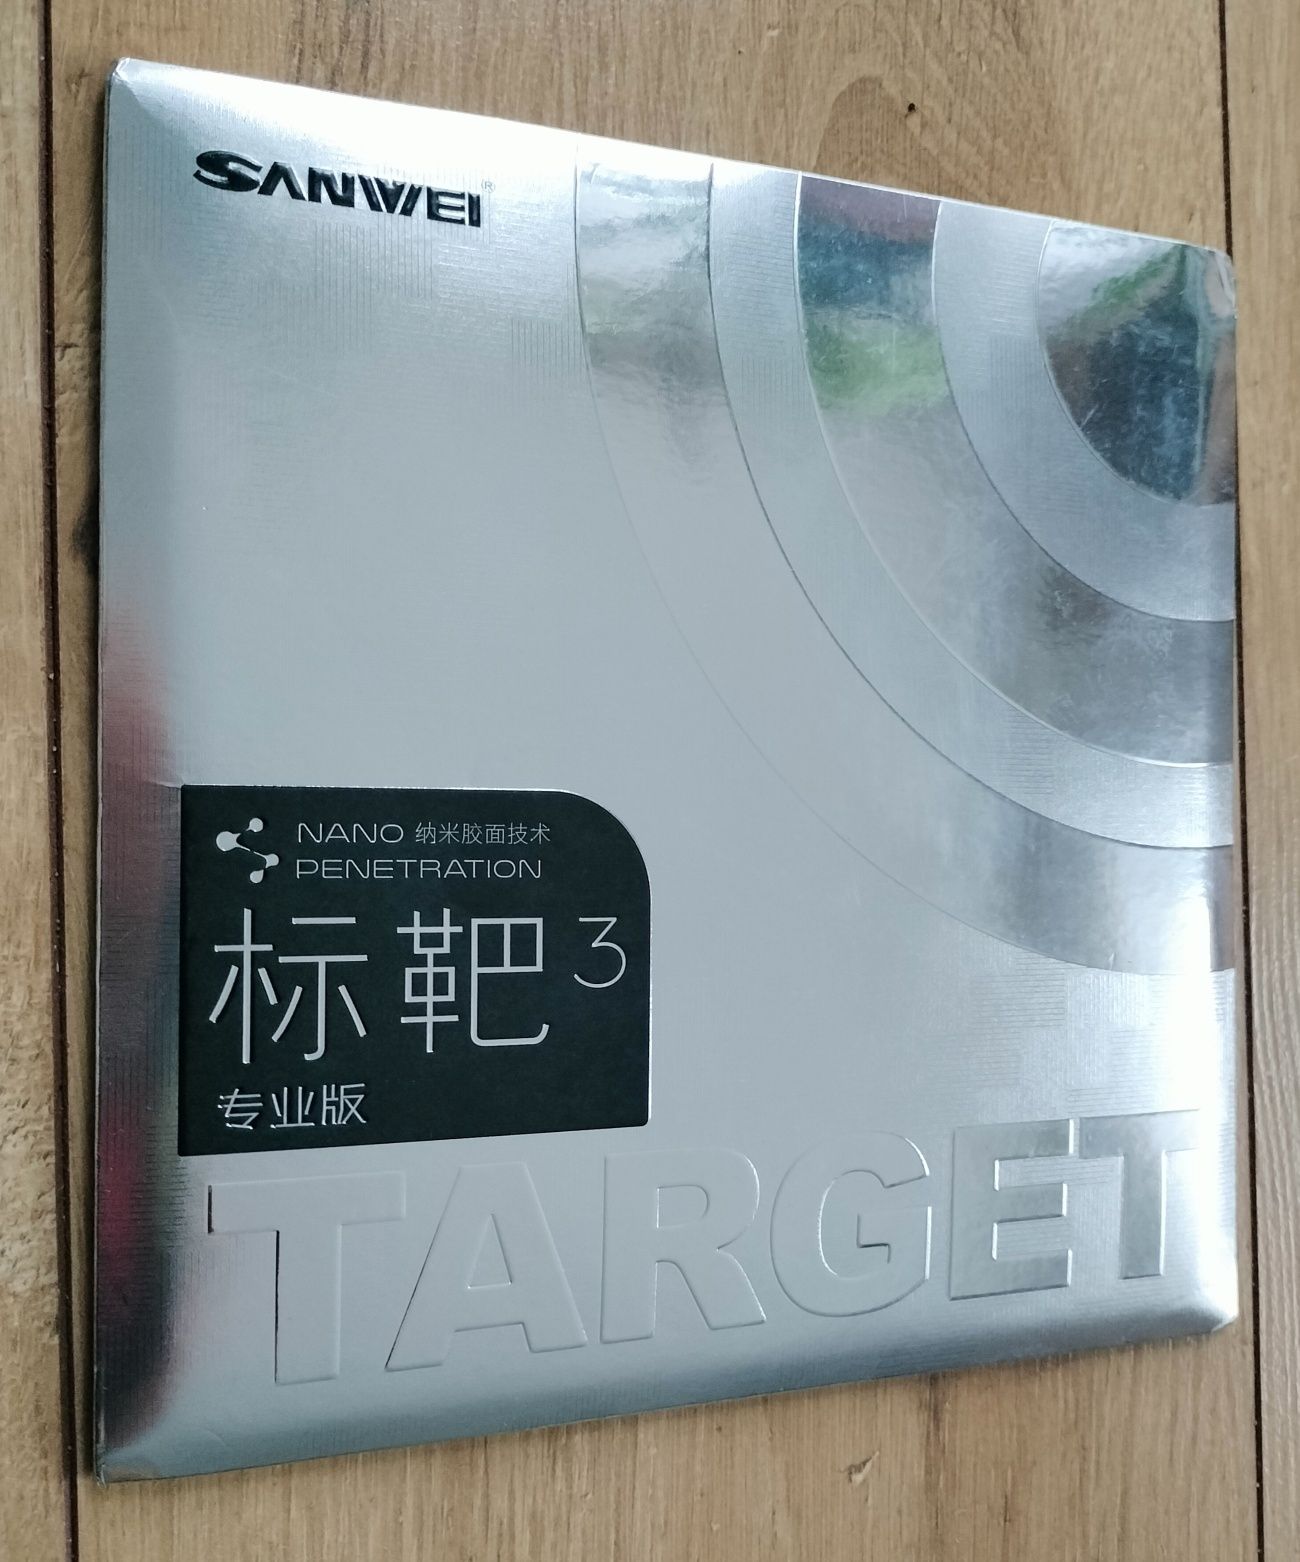 Profesjonalna okładzina  Sanwei Target 3 tenis 
Grubość podkładu:2,